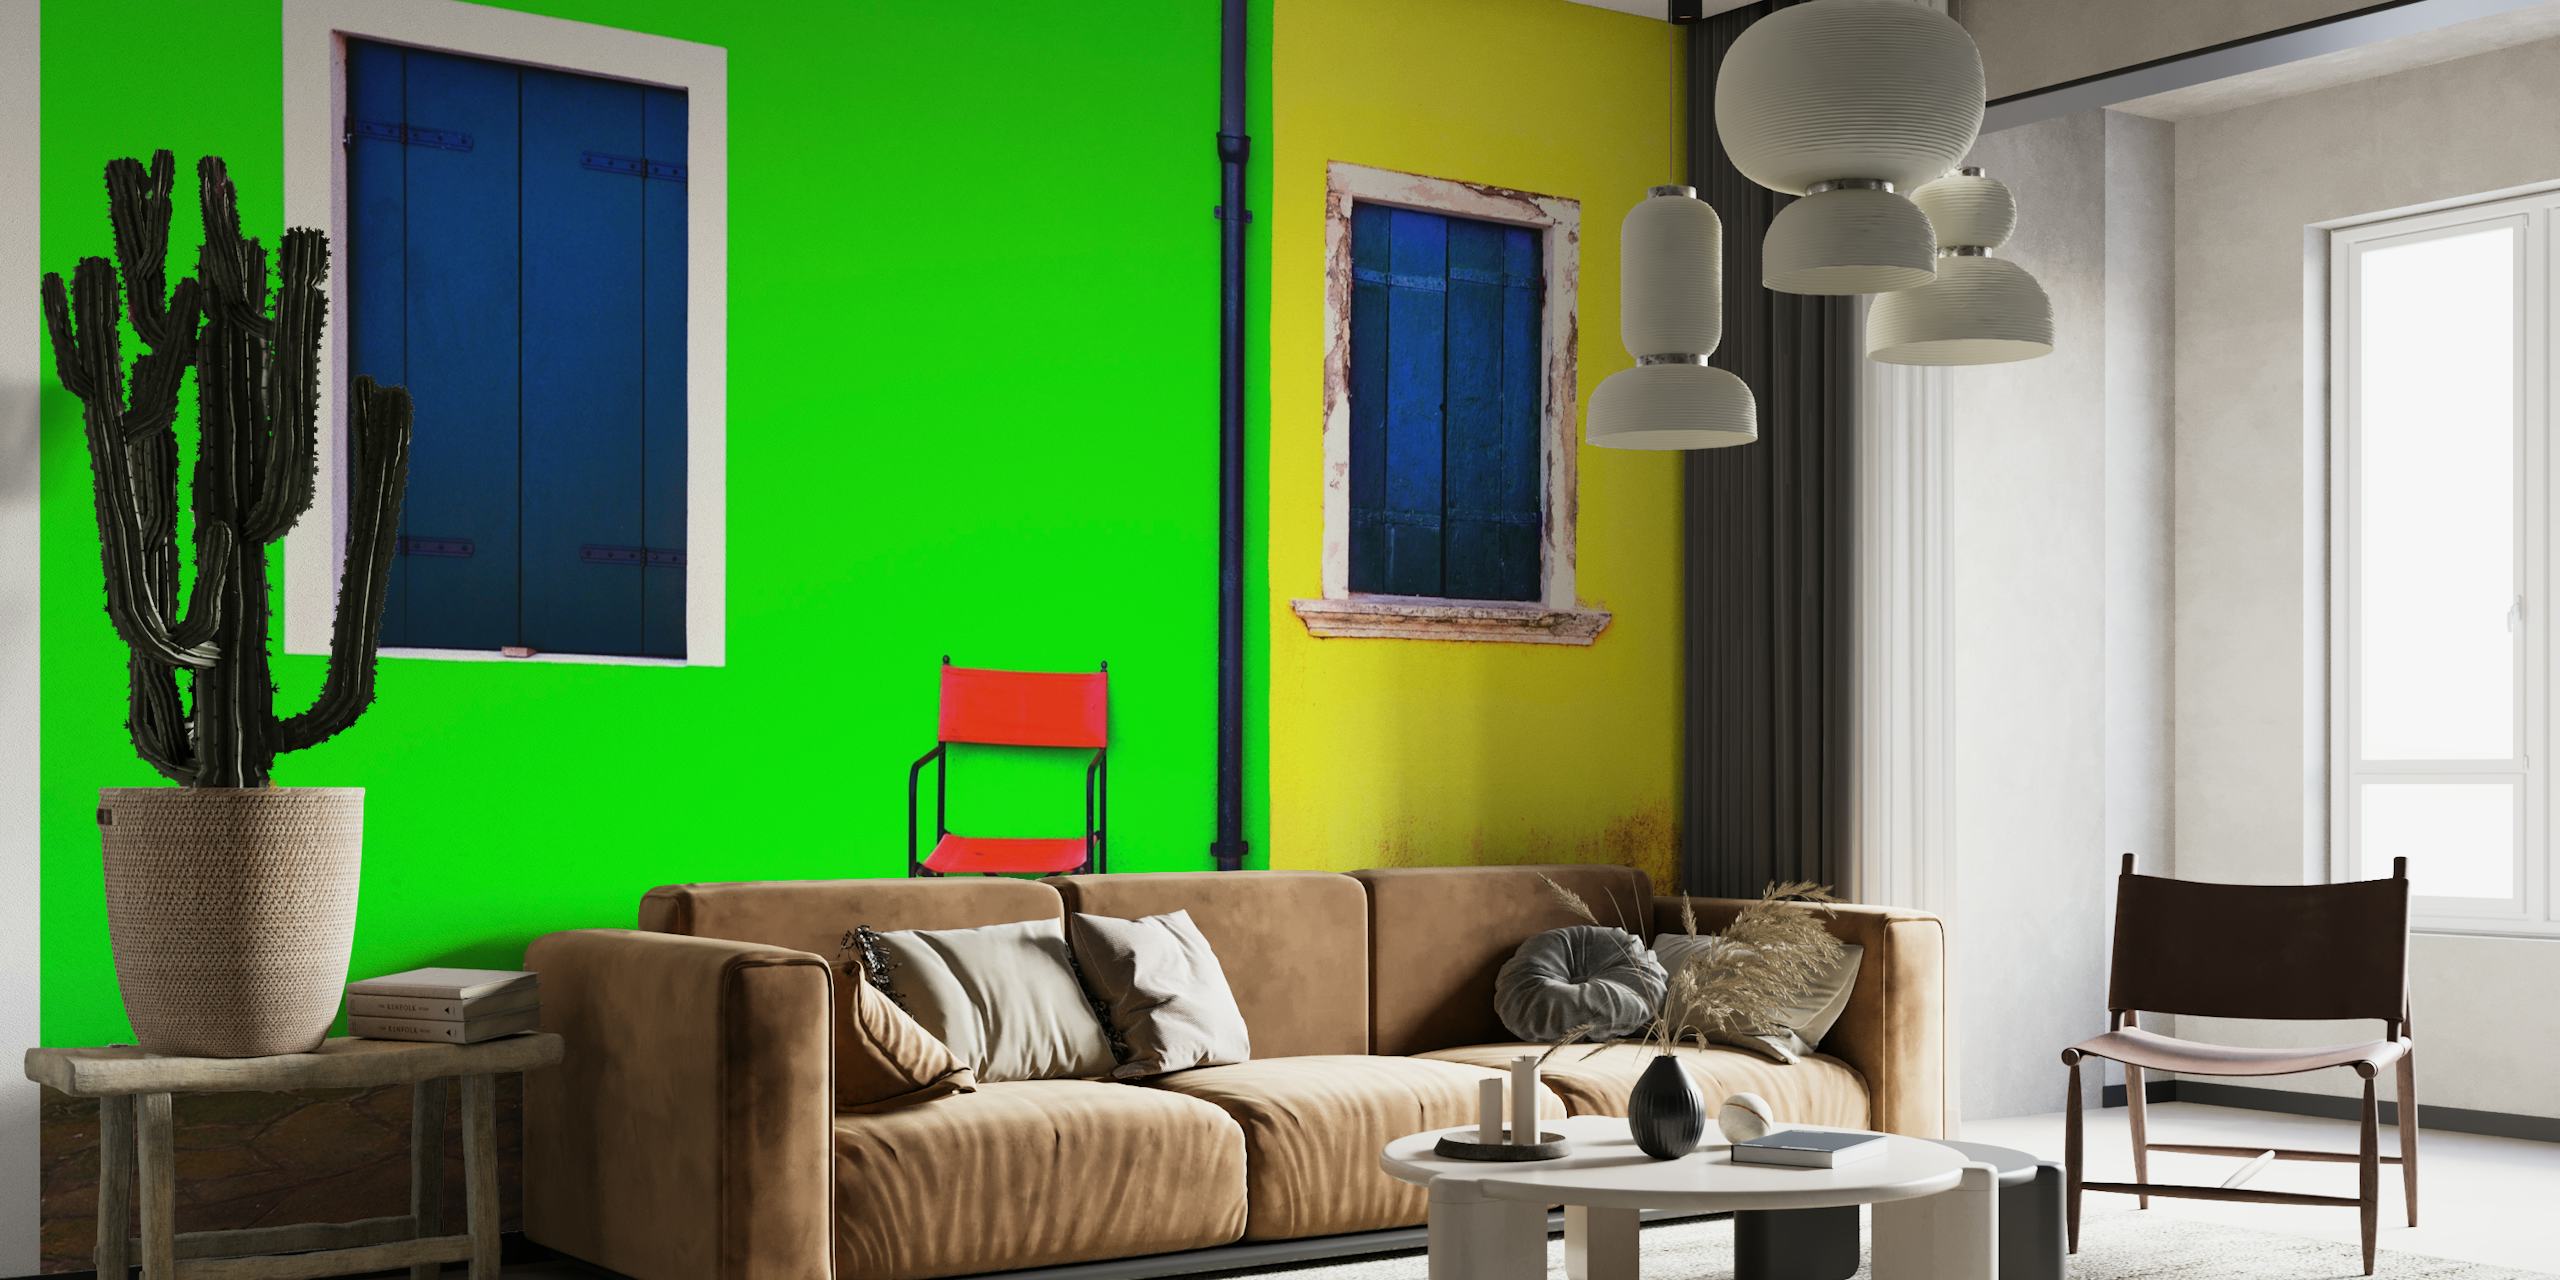 Odvažan i minimalistički zidni mural sa zelenim zidom s plavim prozorom, žutim zidom s plavim prozorom i crvenom stolicom